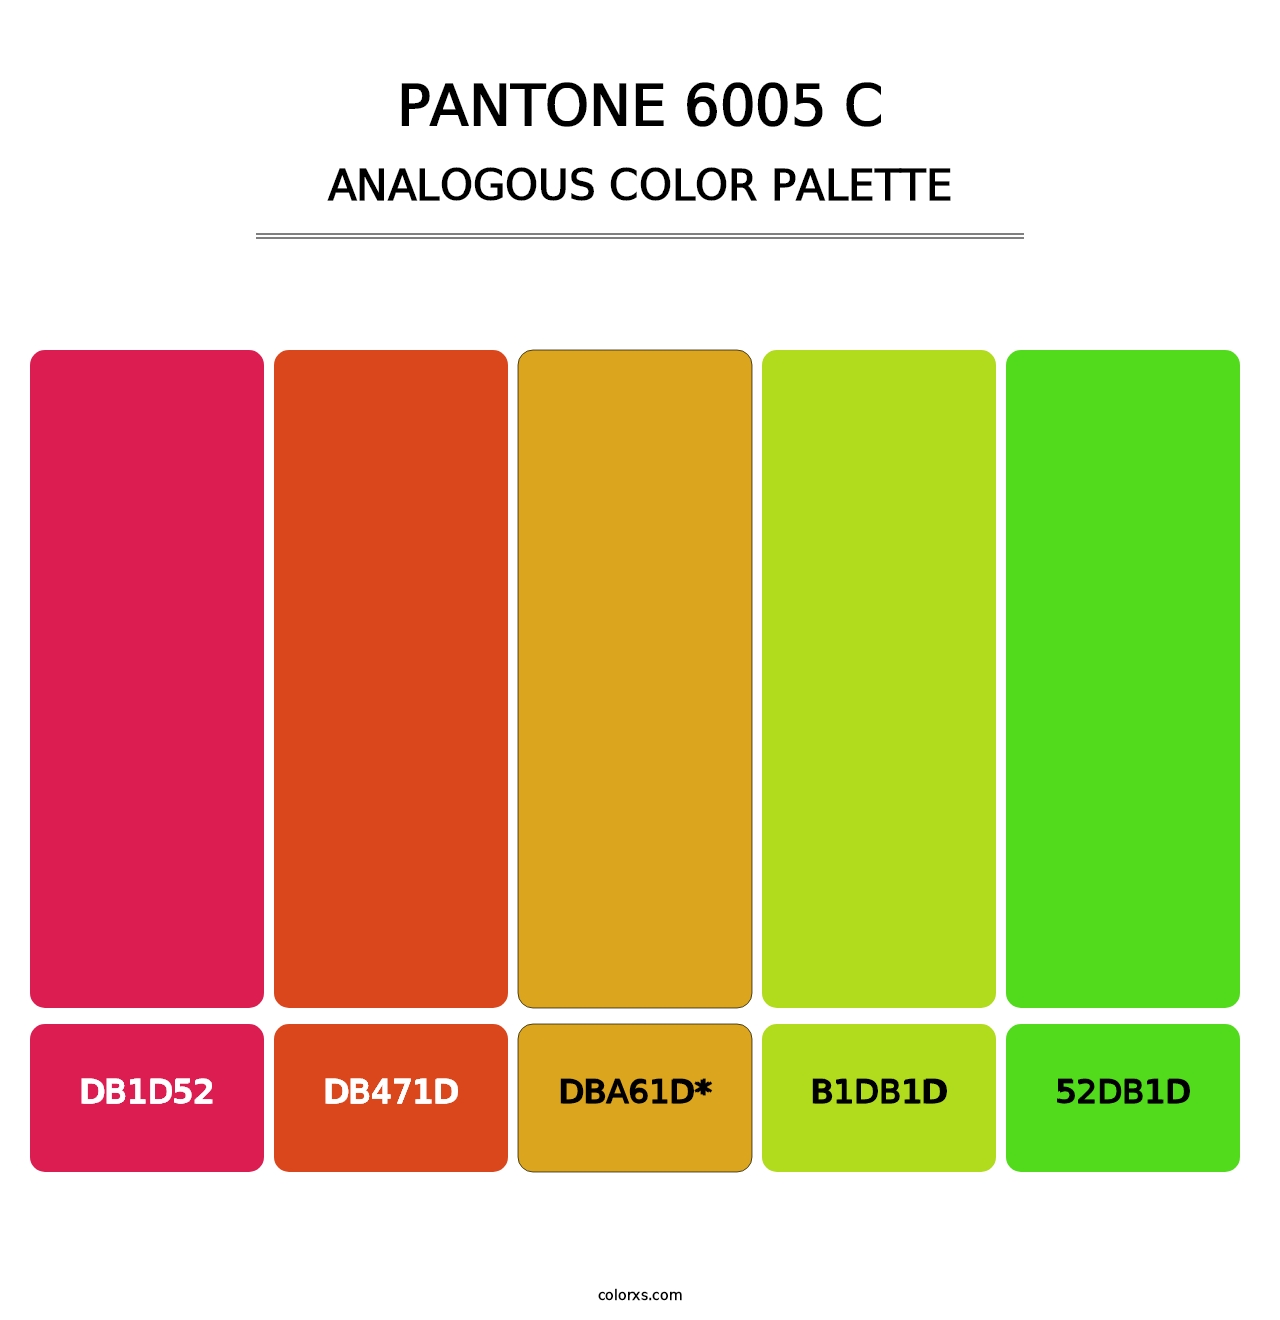 PANTONE 6005 C - Analogous Color Palette